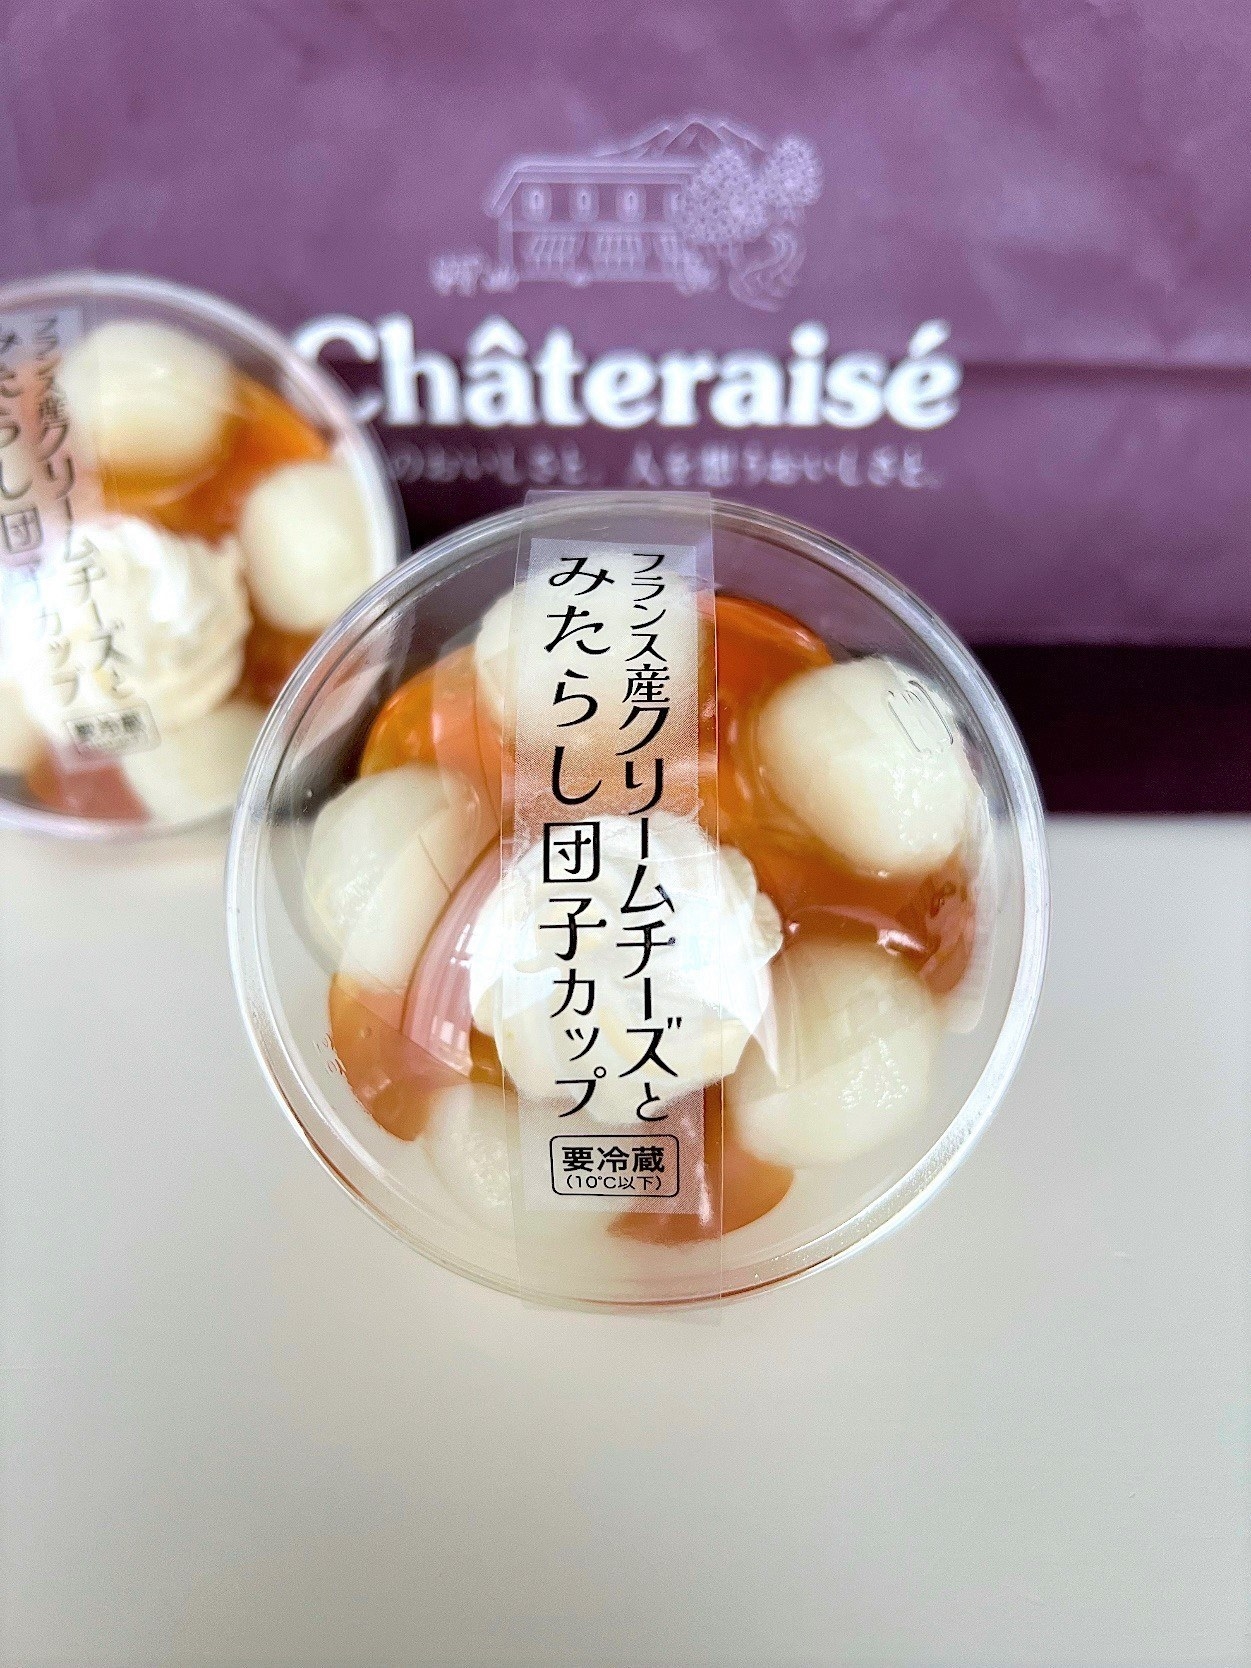 Chateraise（シャトレーゼ）のおすすめのスイーツ「フランス産クリームチーズとみたらし団子カップ」